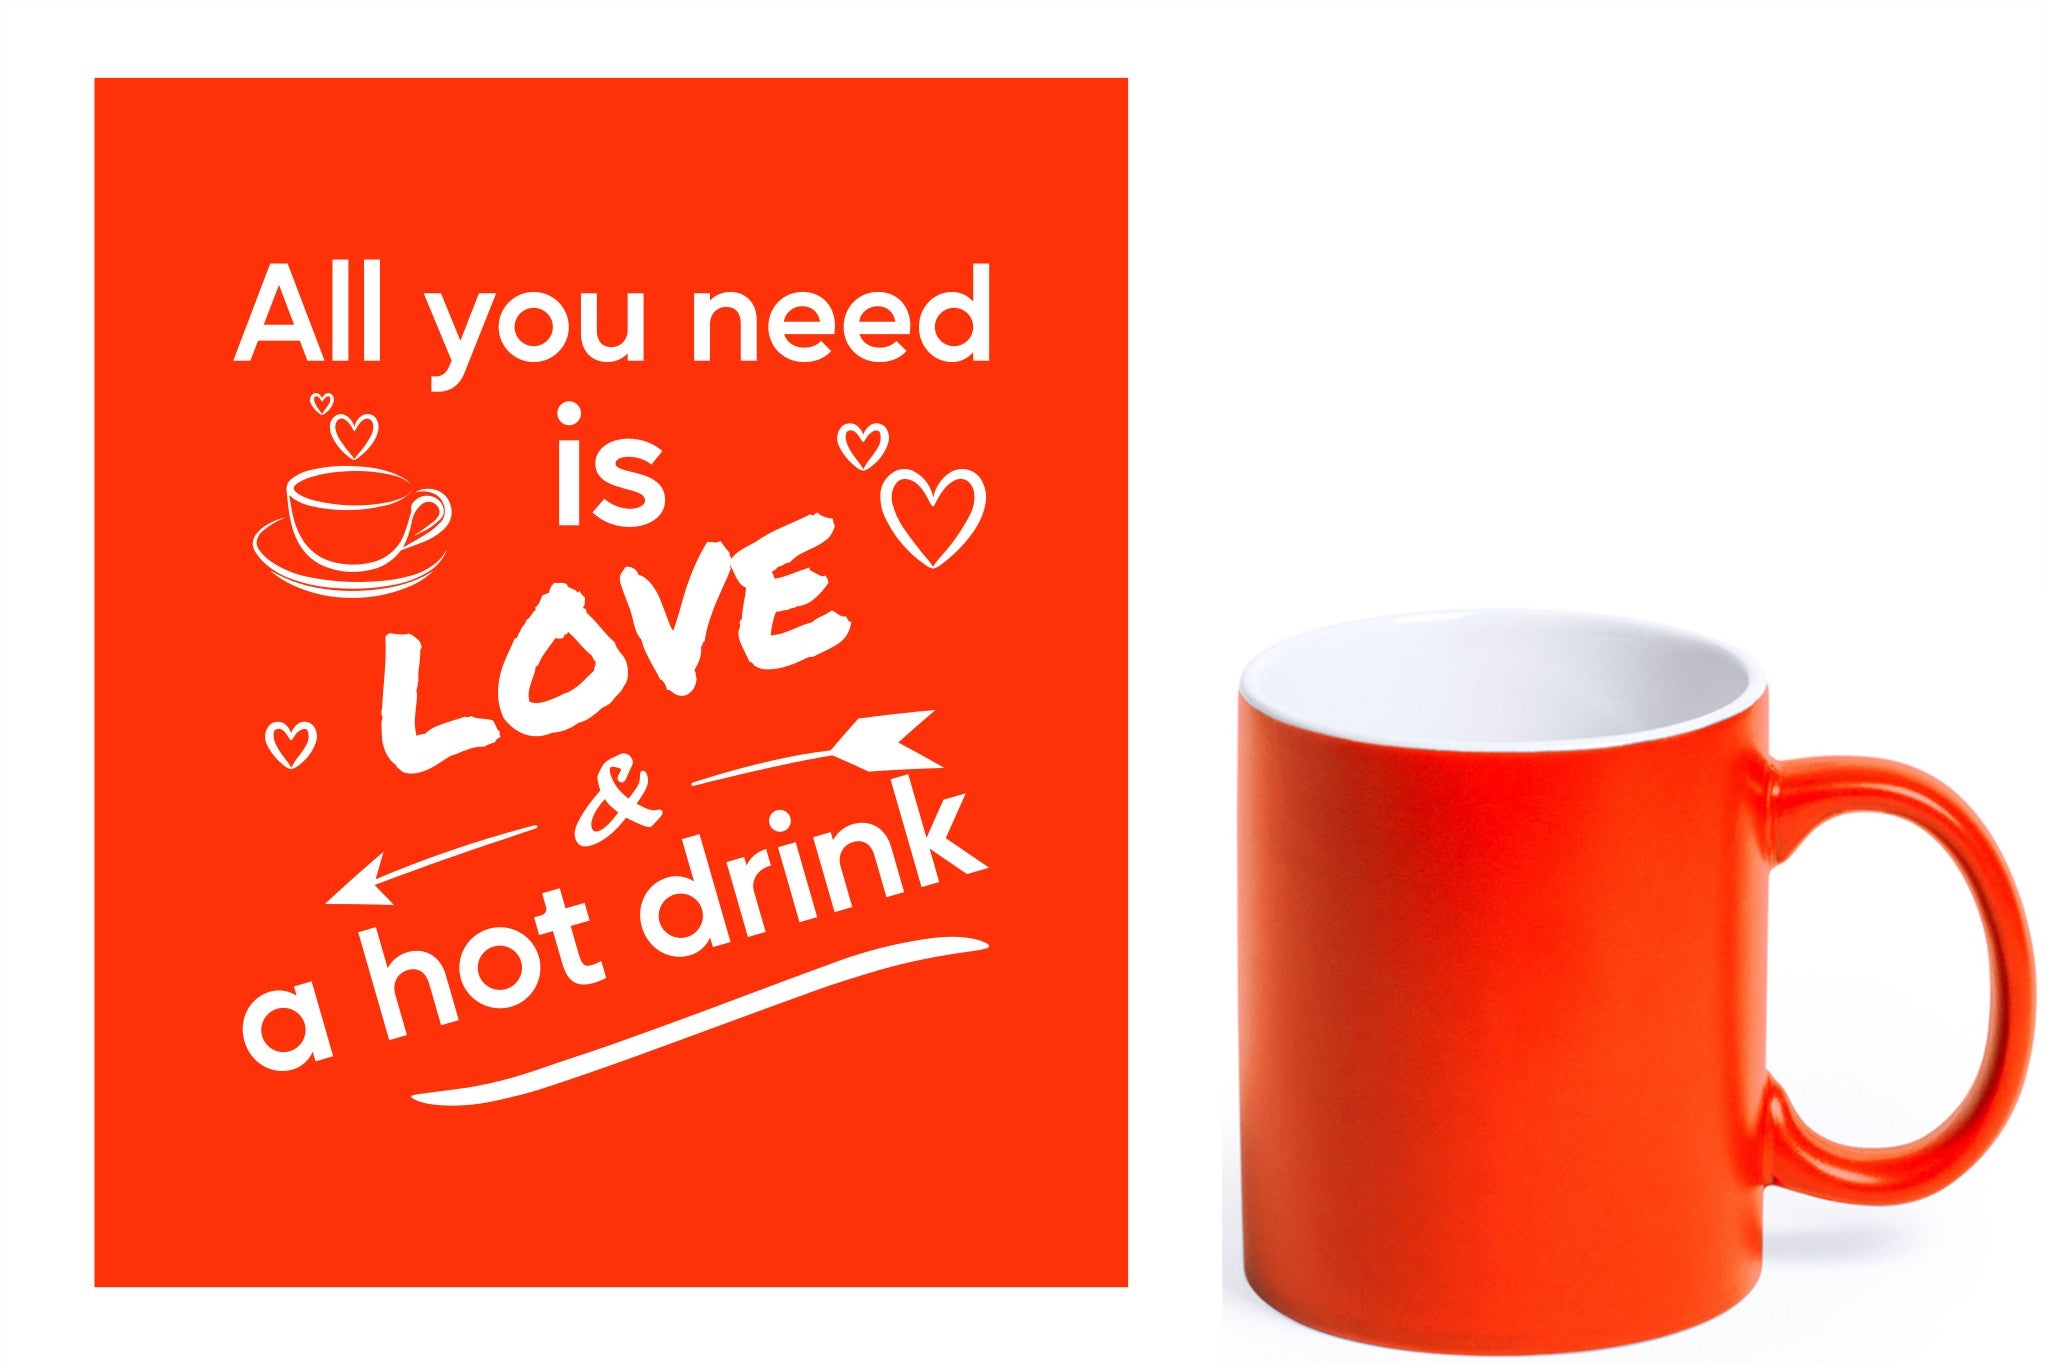 groene keramische mok met witte gravure  'All you need is love & a hot drink'.